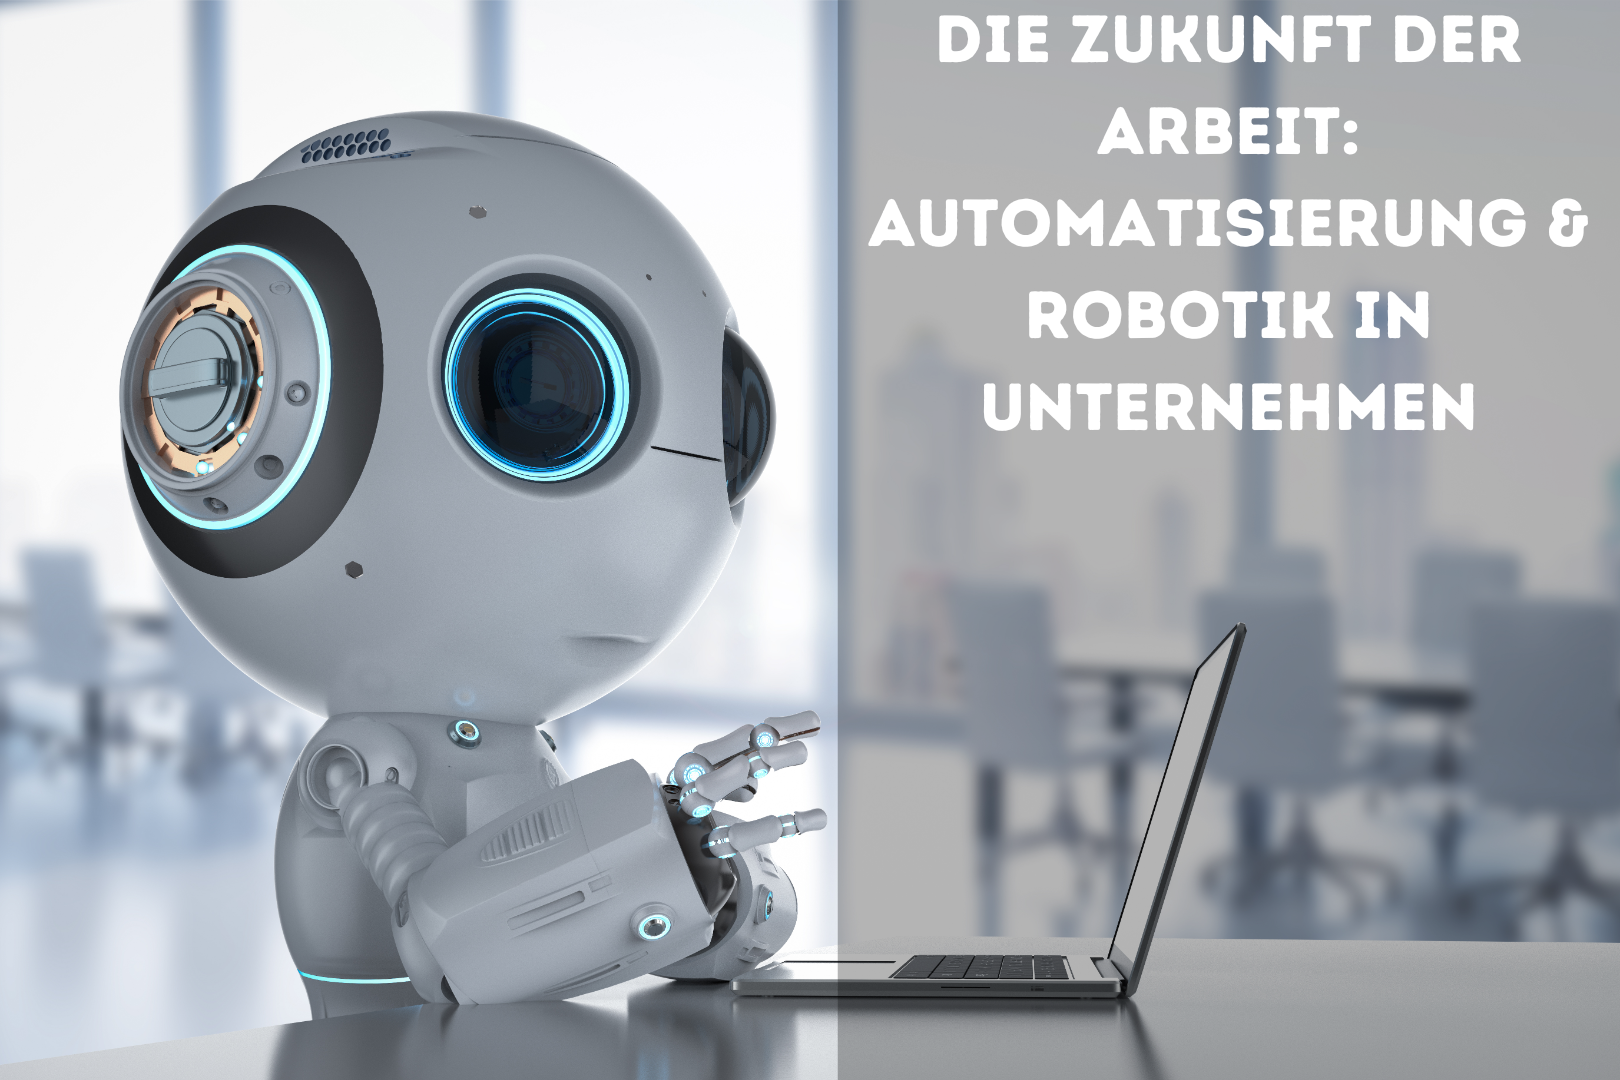 Die Zukunft der Arbeit: Automatisierung & Robotik in Unternehmen